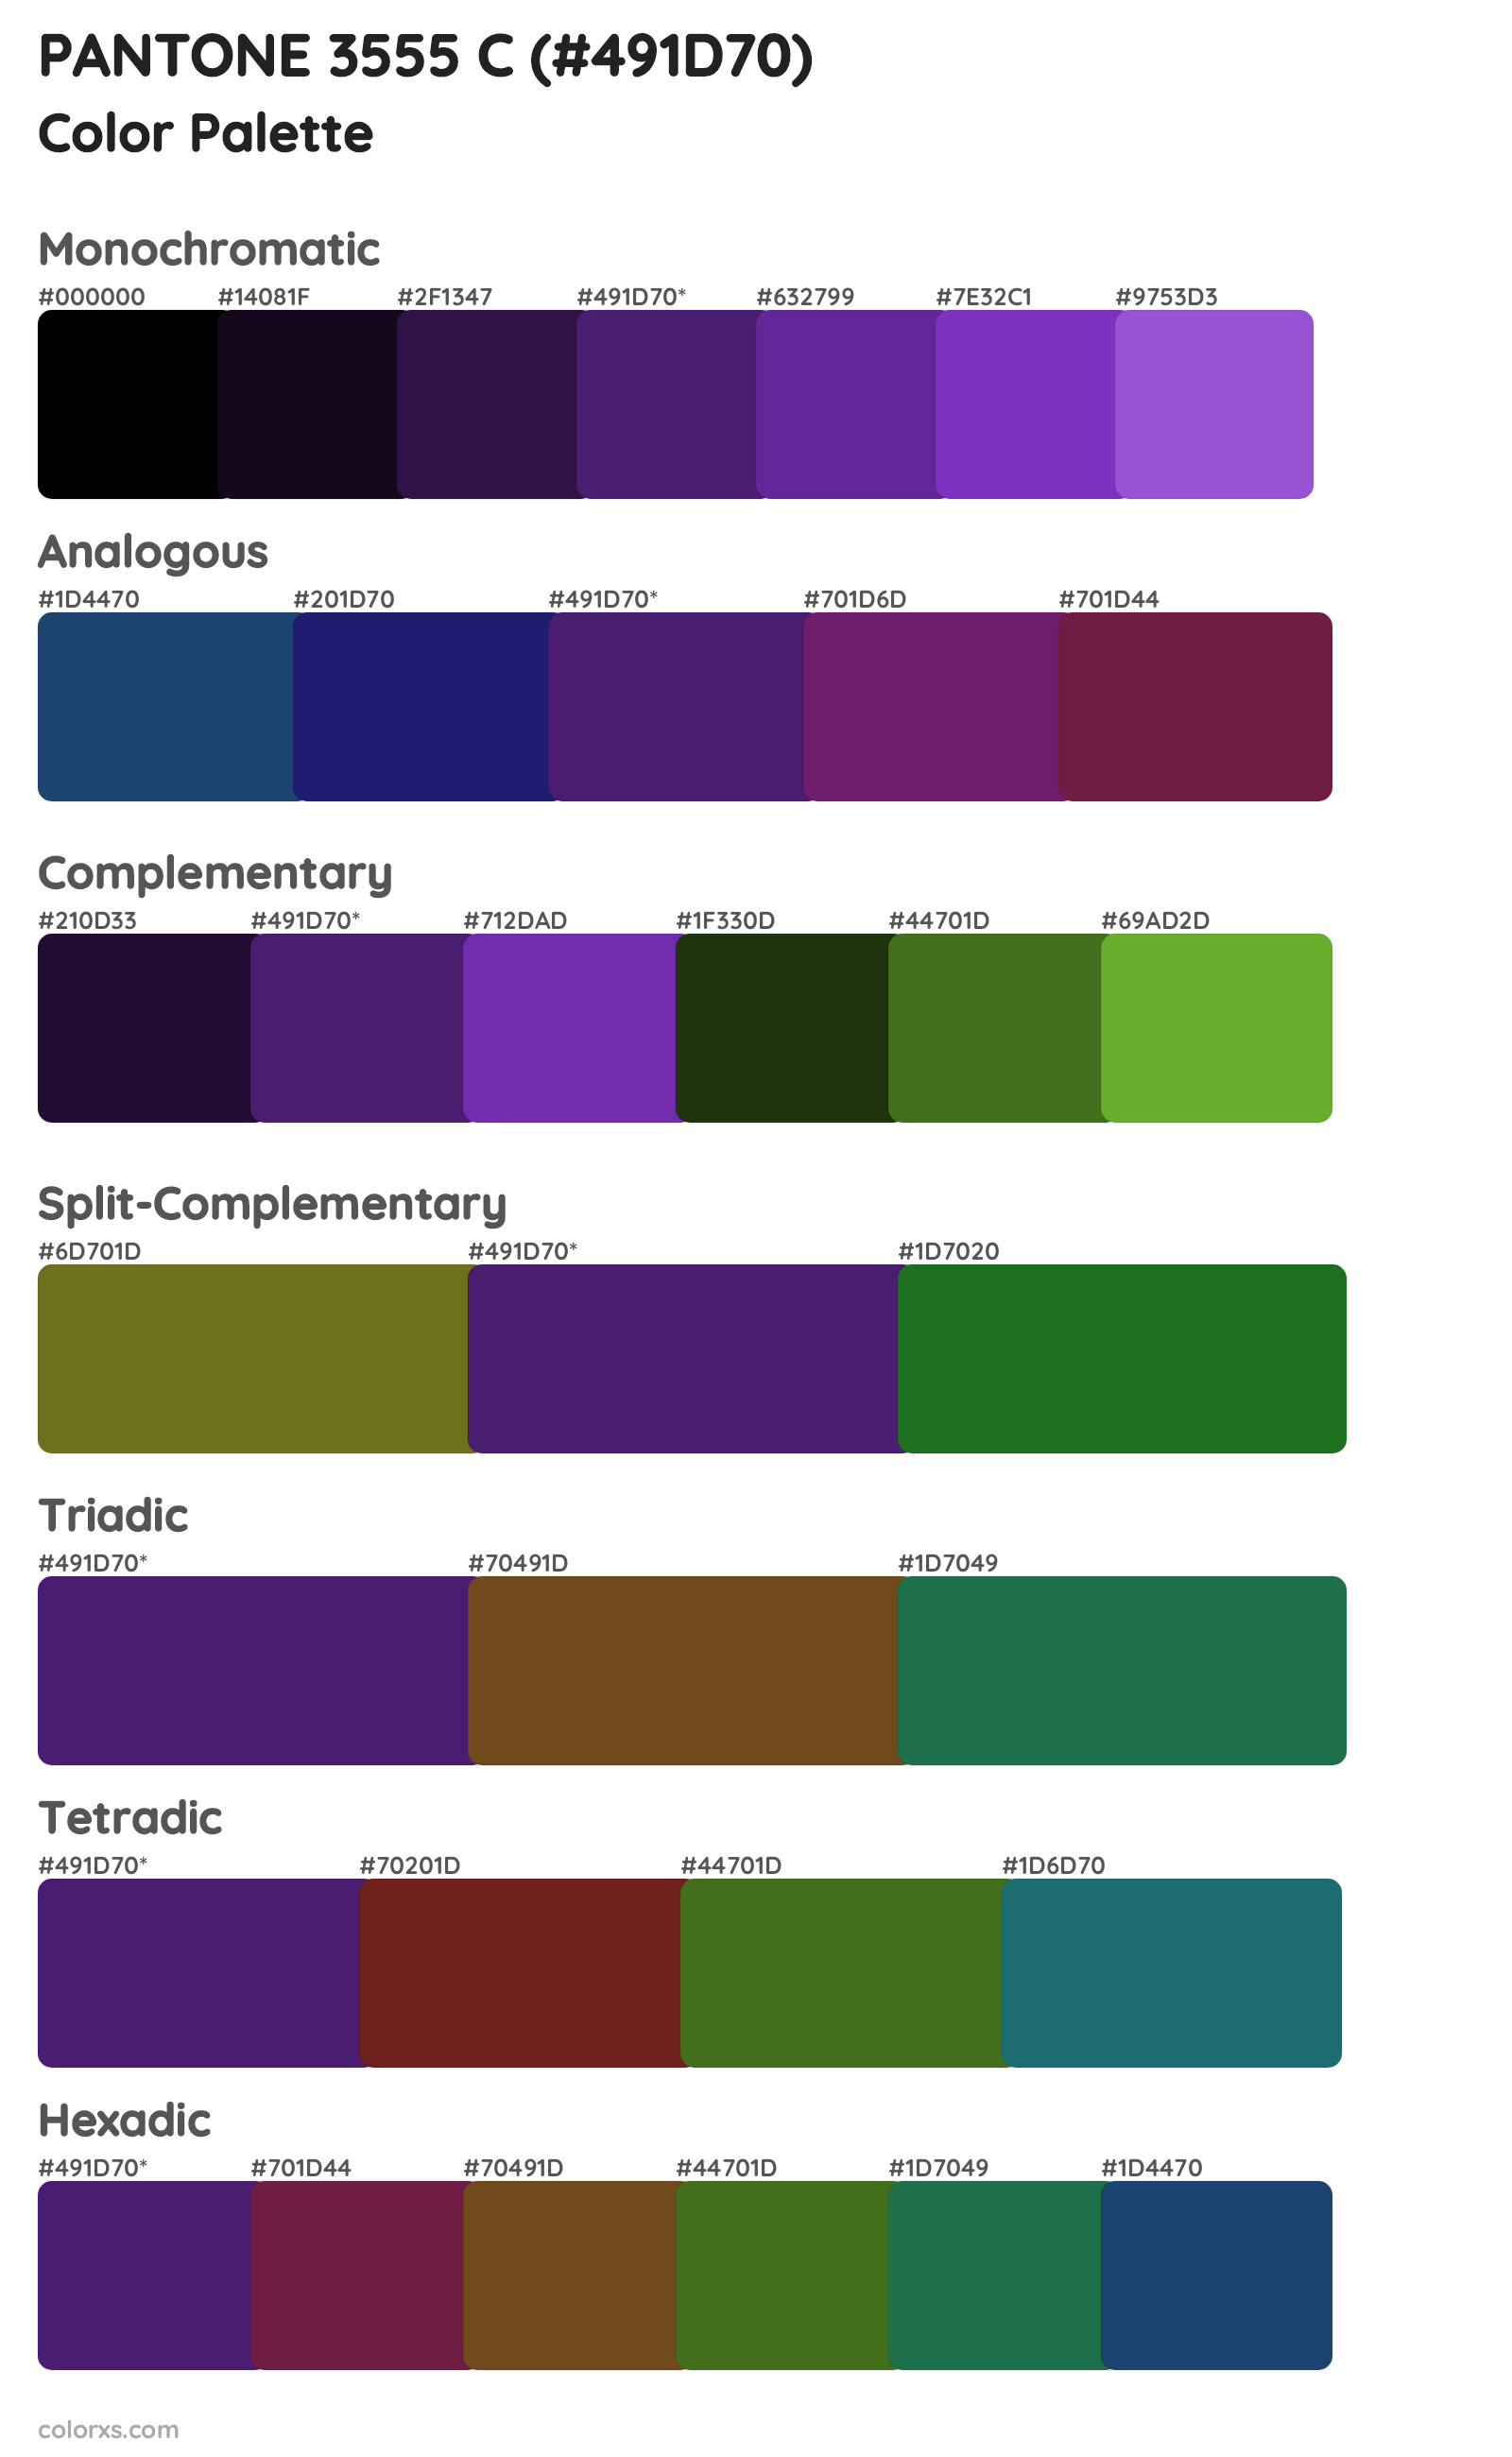 PANTONE 3555 C Color Scheme Palettes